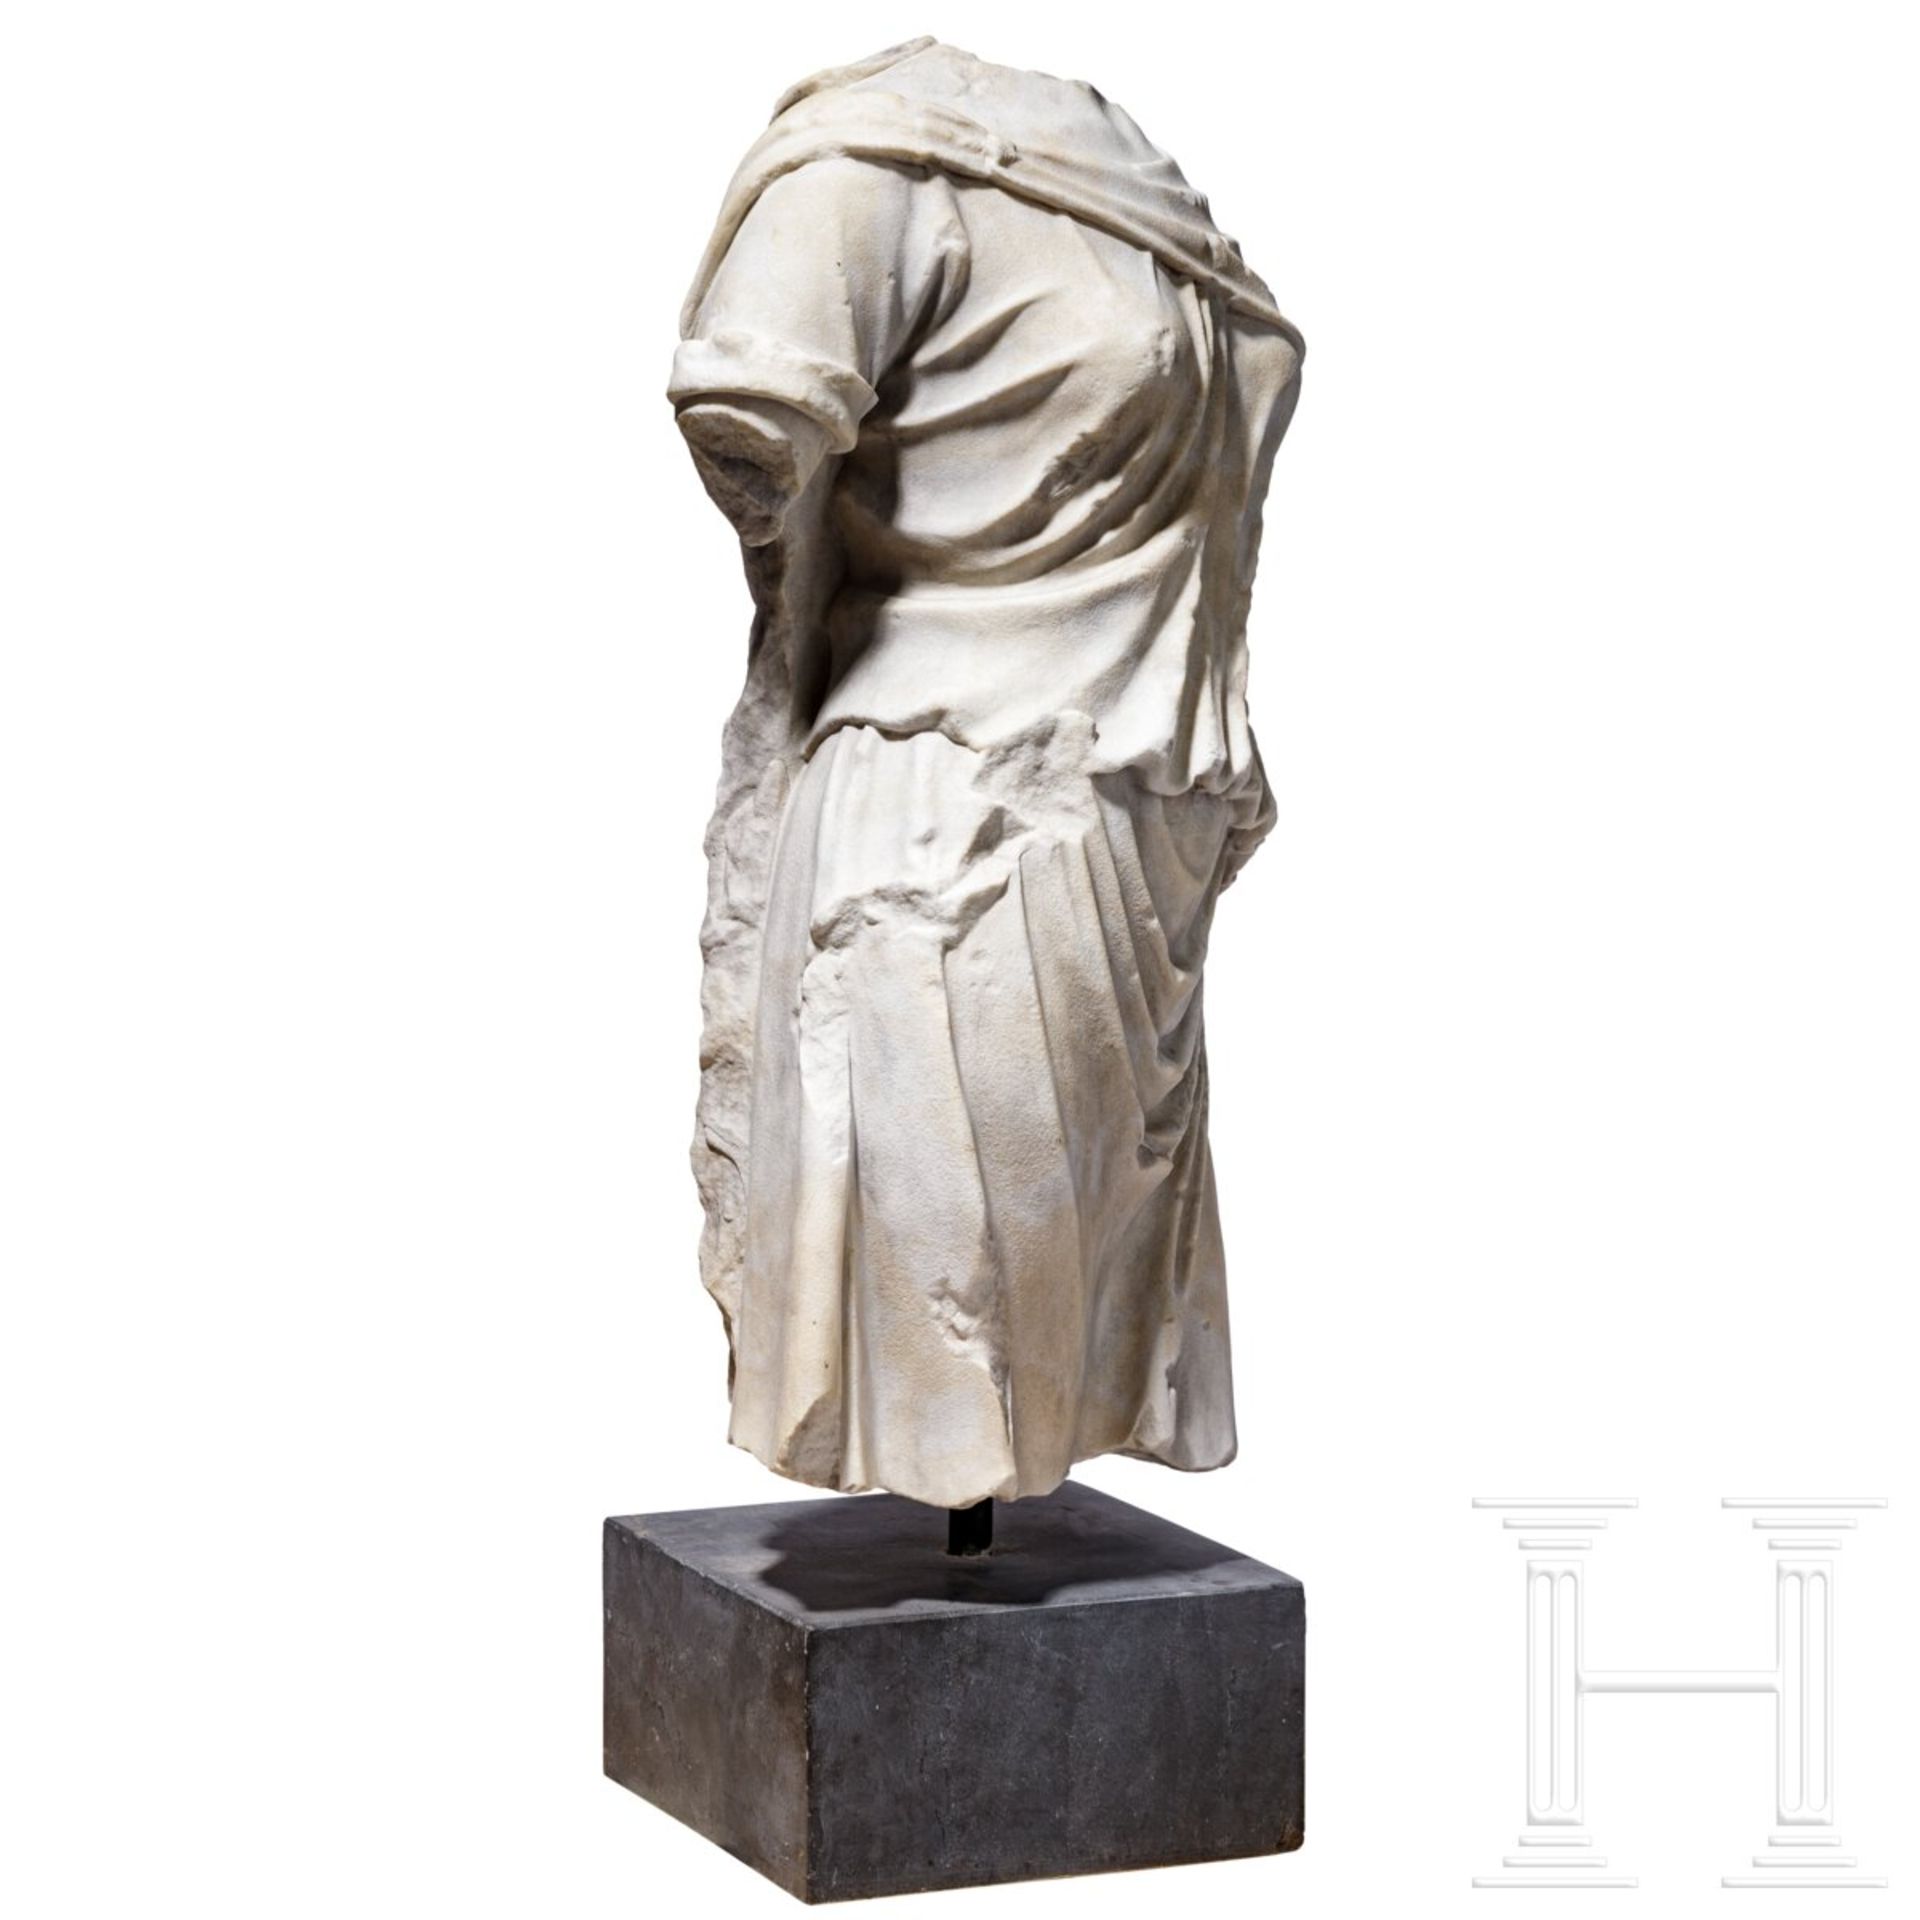 Klassizistischer Marmortorso nach dem Vorbild einer antiken Artemis-Statue, um 1800 - frühes 19. Jhd - Image 2 of 7